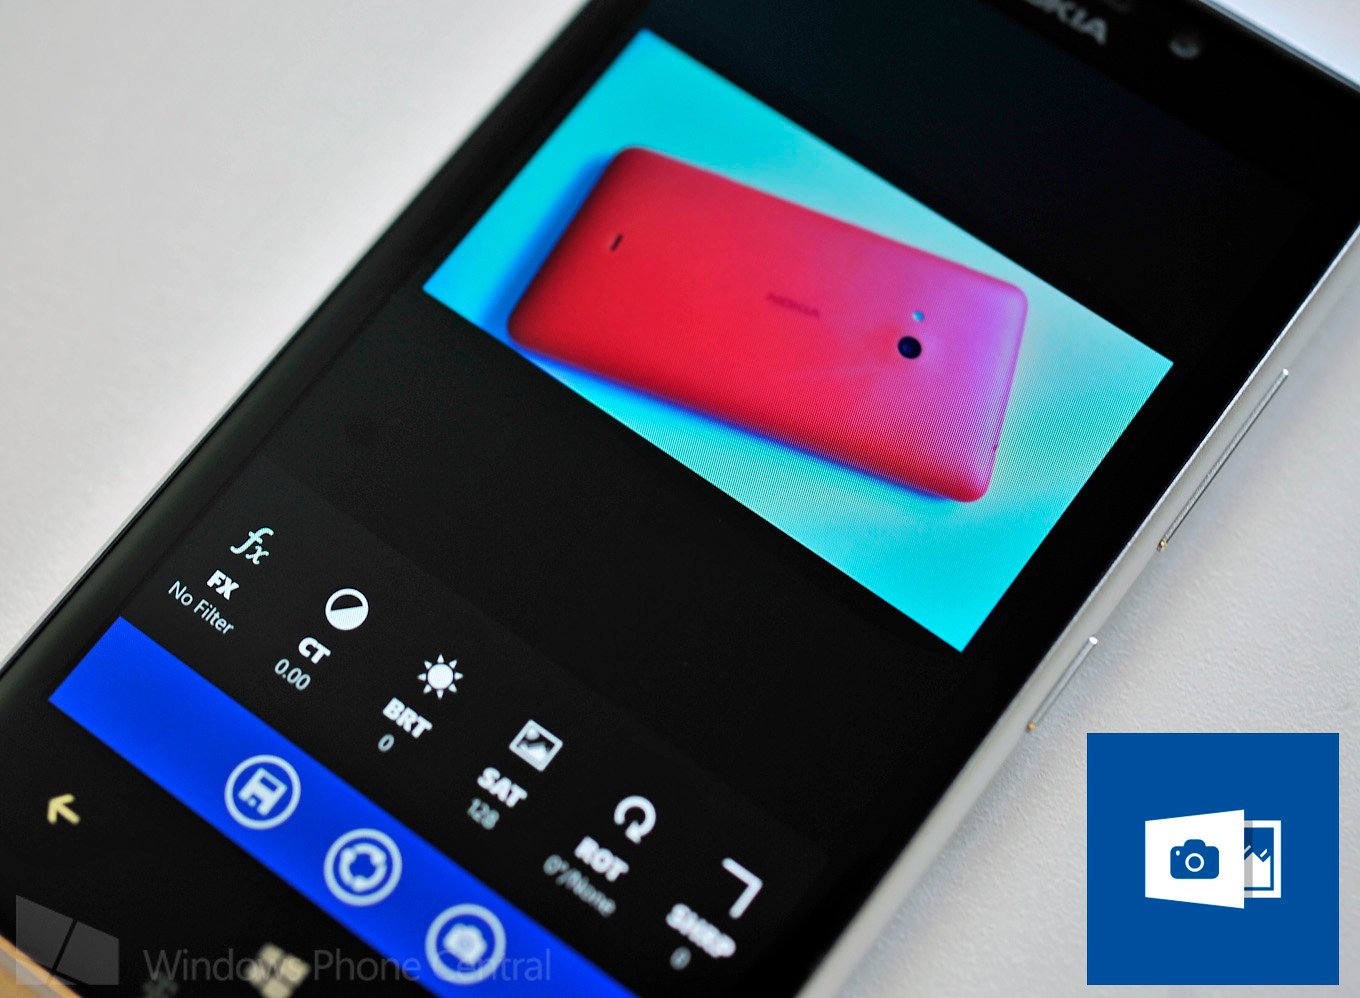 OneShot for Windows Phone 8